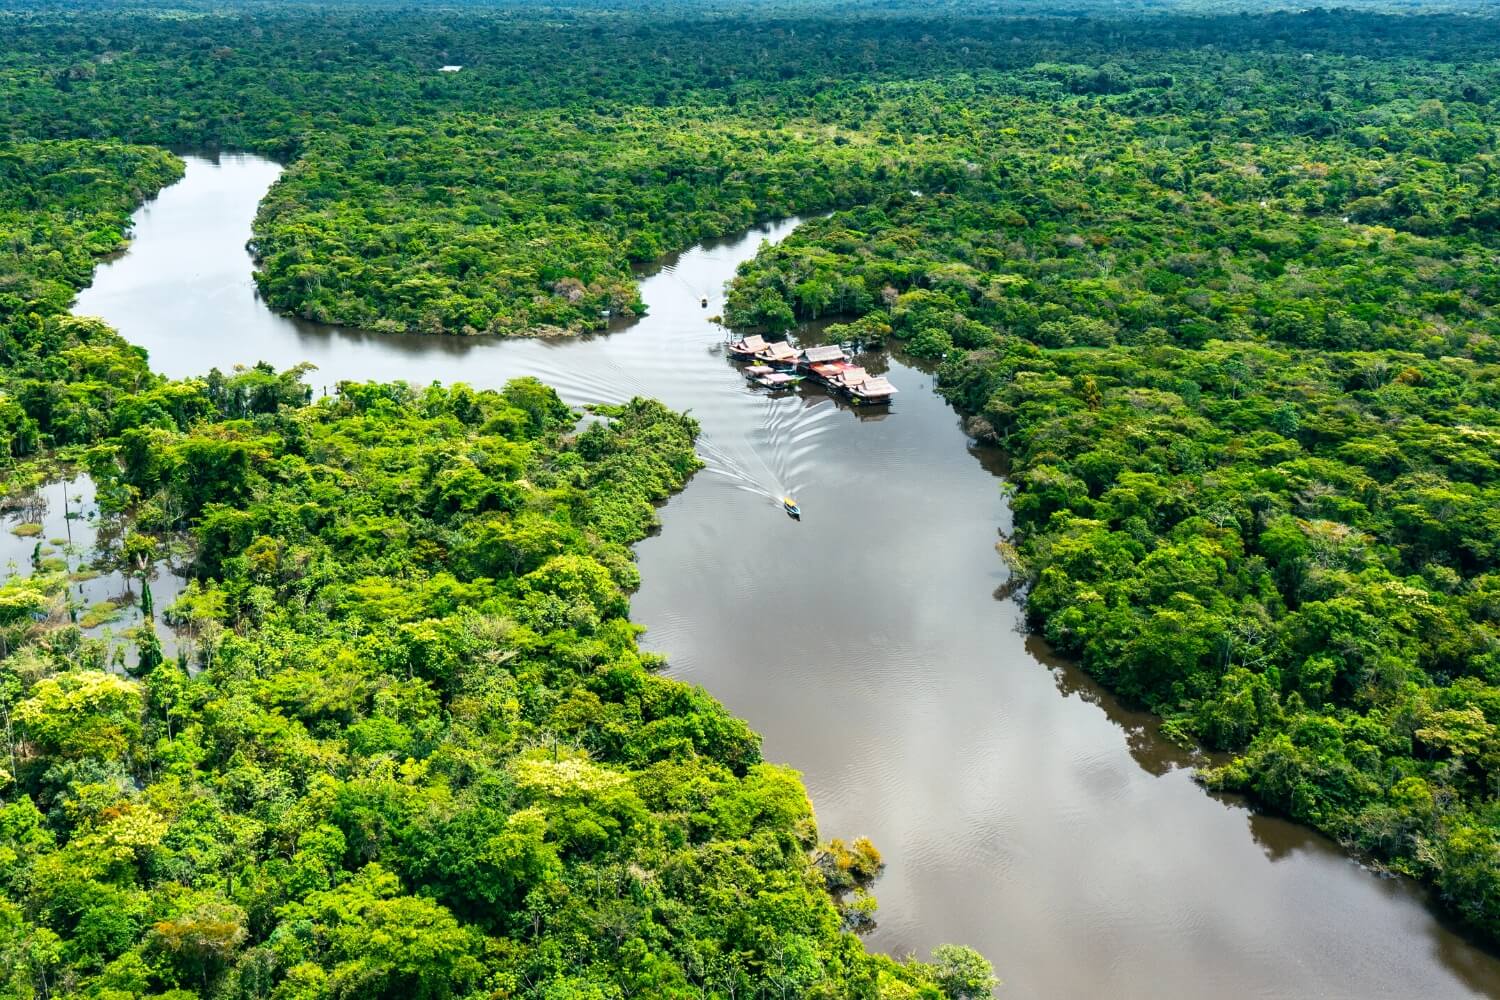 Río Amazonas: Uno de los lugares turísticos más visitados de la selva